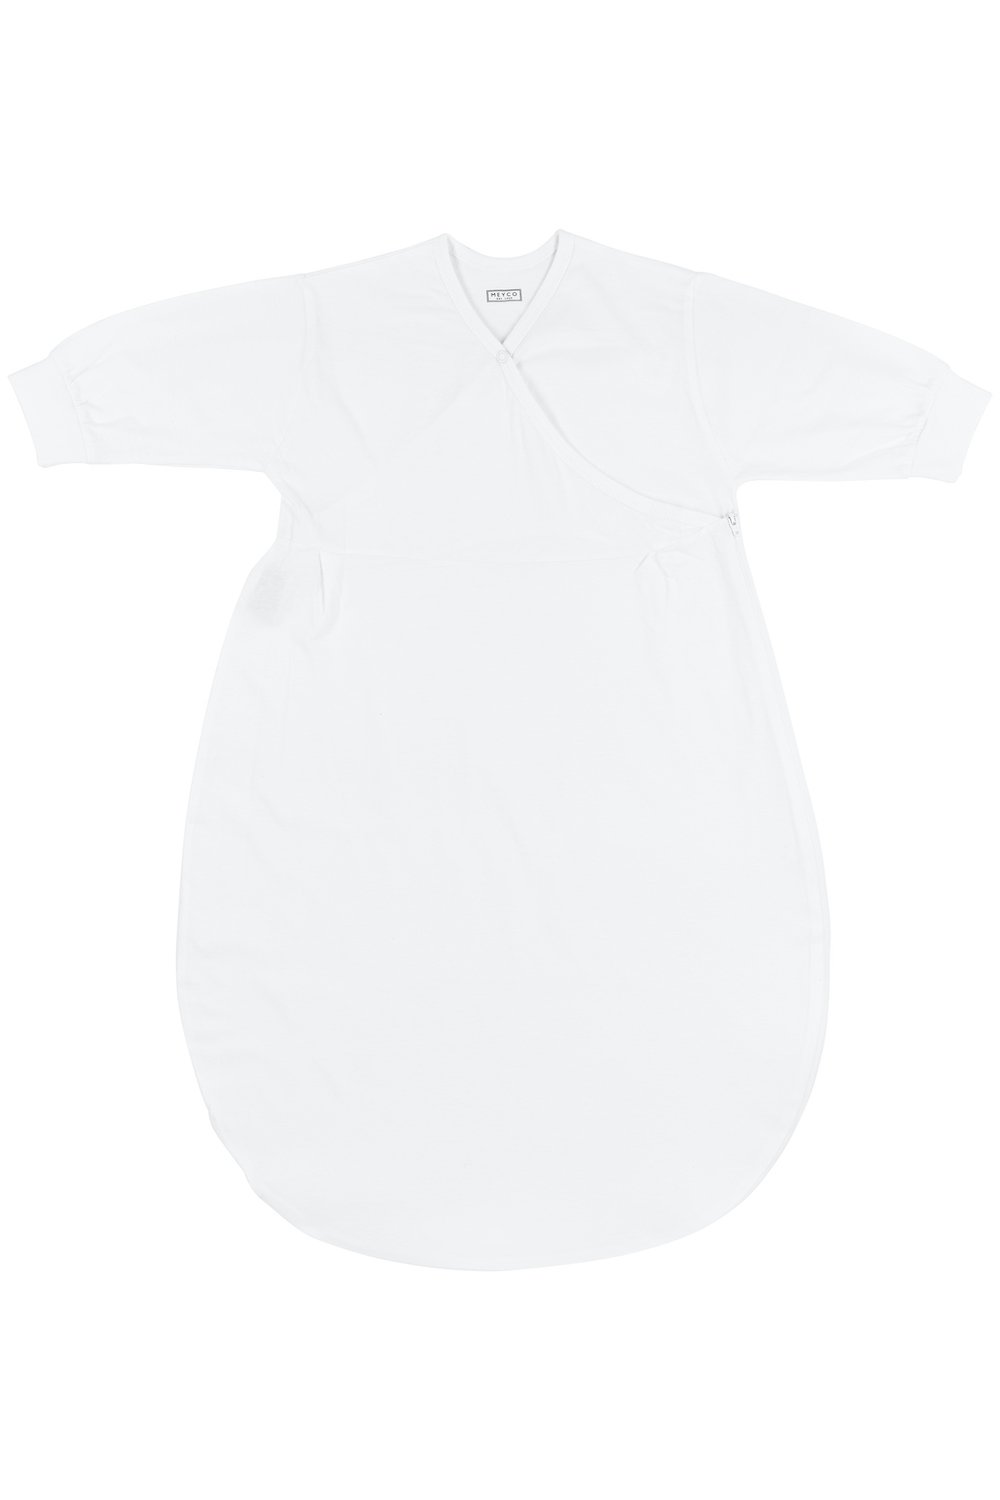 Inner sleeping bag Uni - white - 56/62